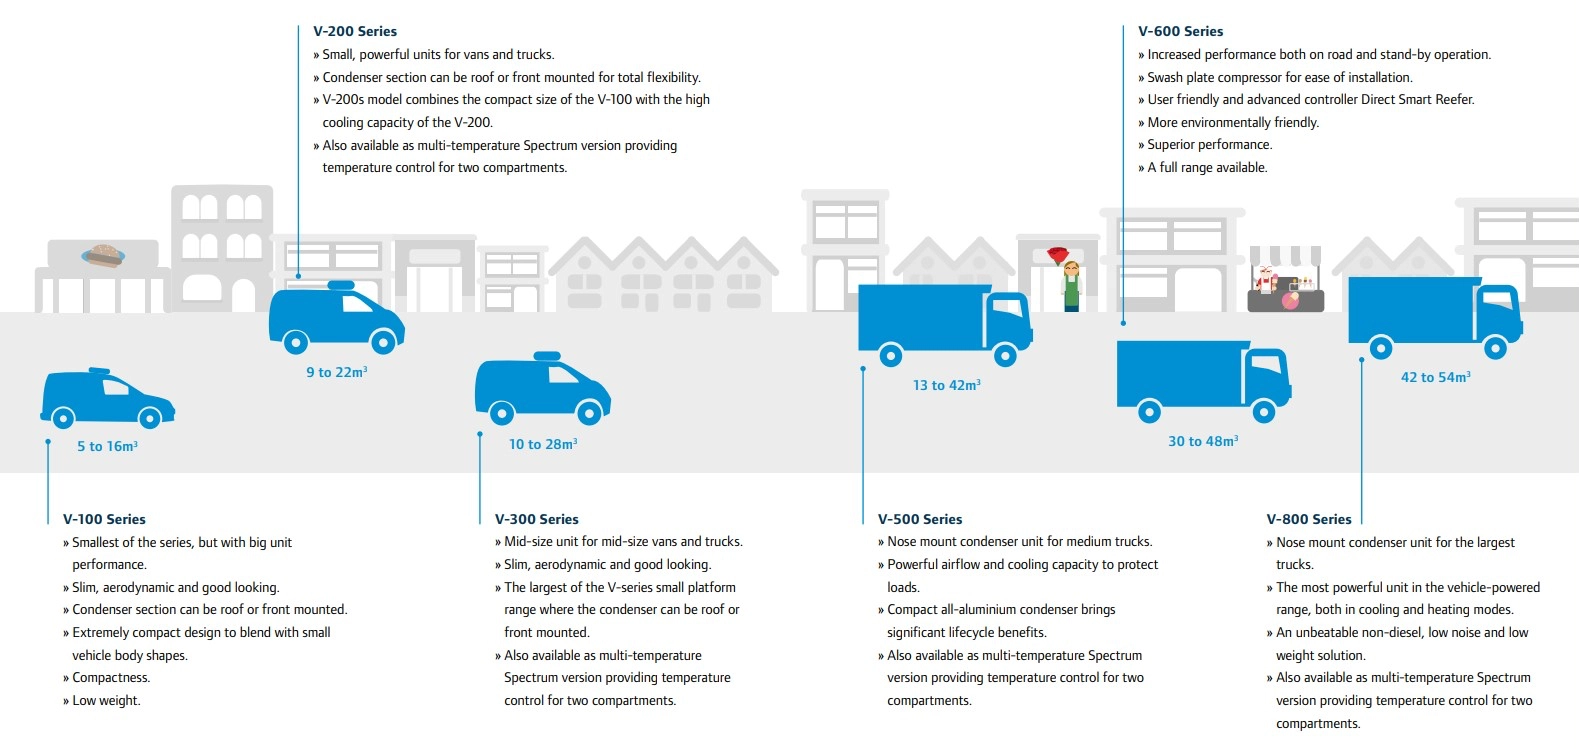 Grafika przedstawiająca samochody dostawcze wyposażone w agregaty chłodnicze Thermo King wraz z krótkimi opisami